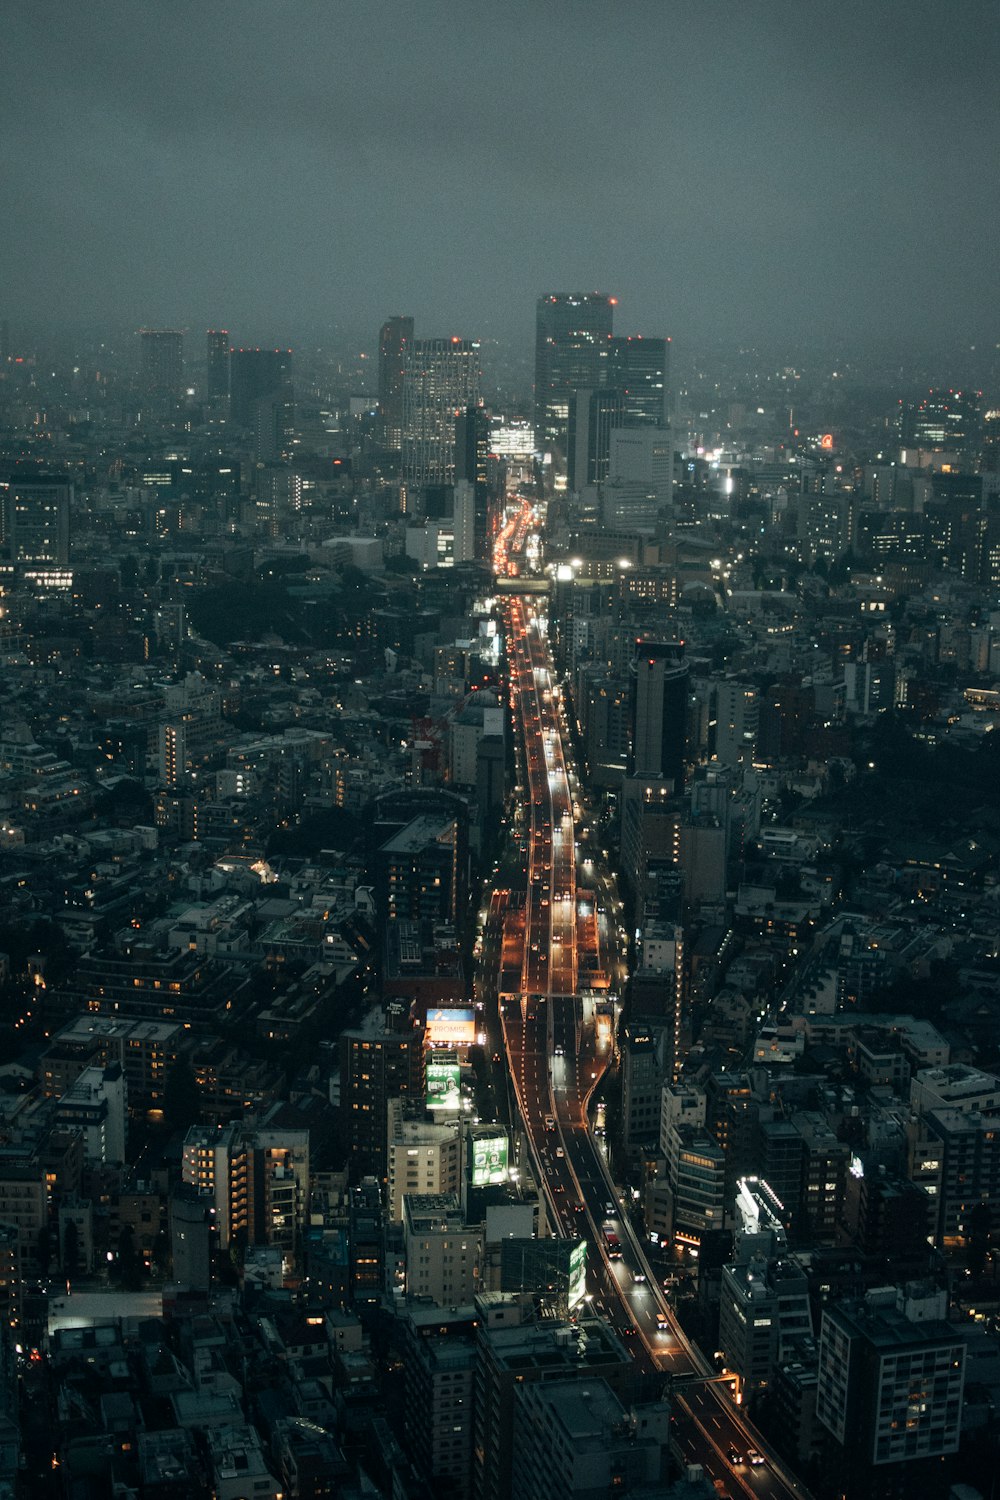 Ein Blick auf eine Stadt bei Nacht von der Spitze eines hohen Gebäudes